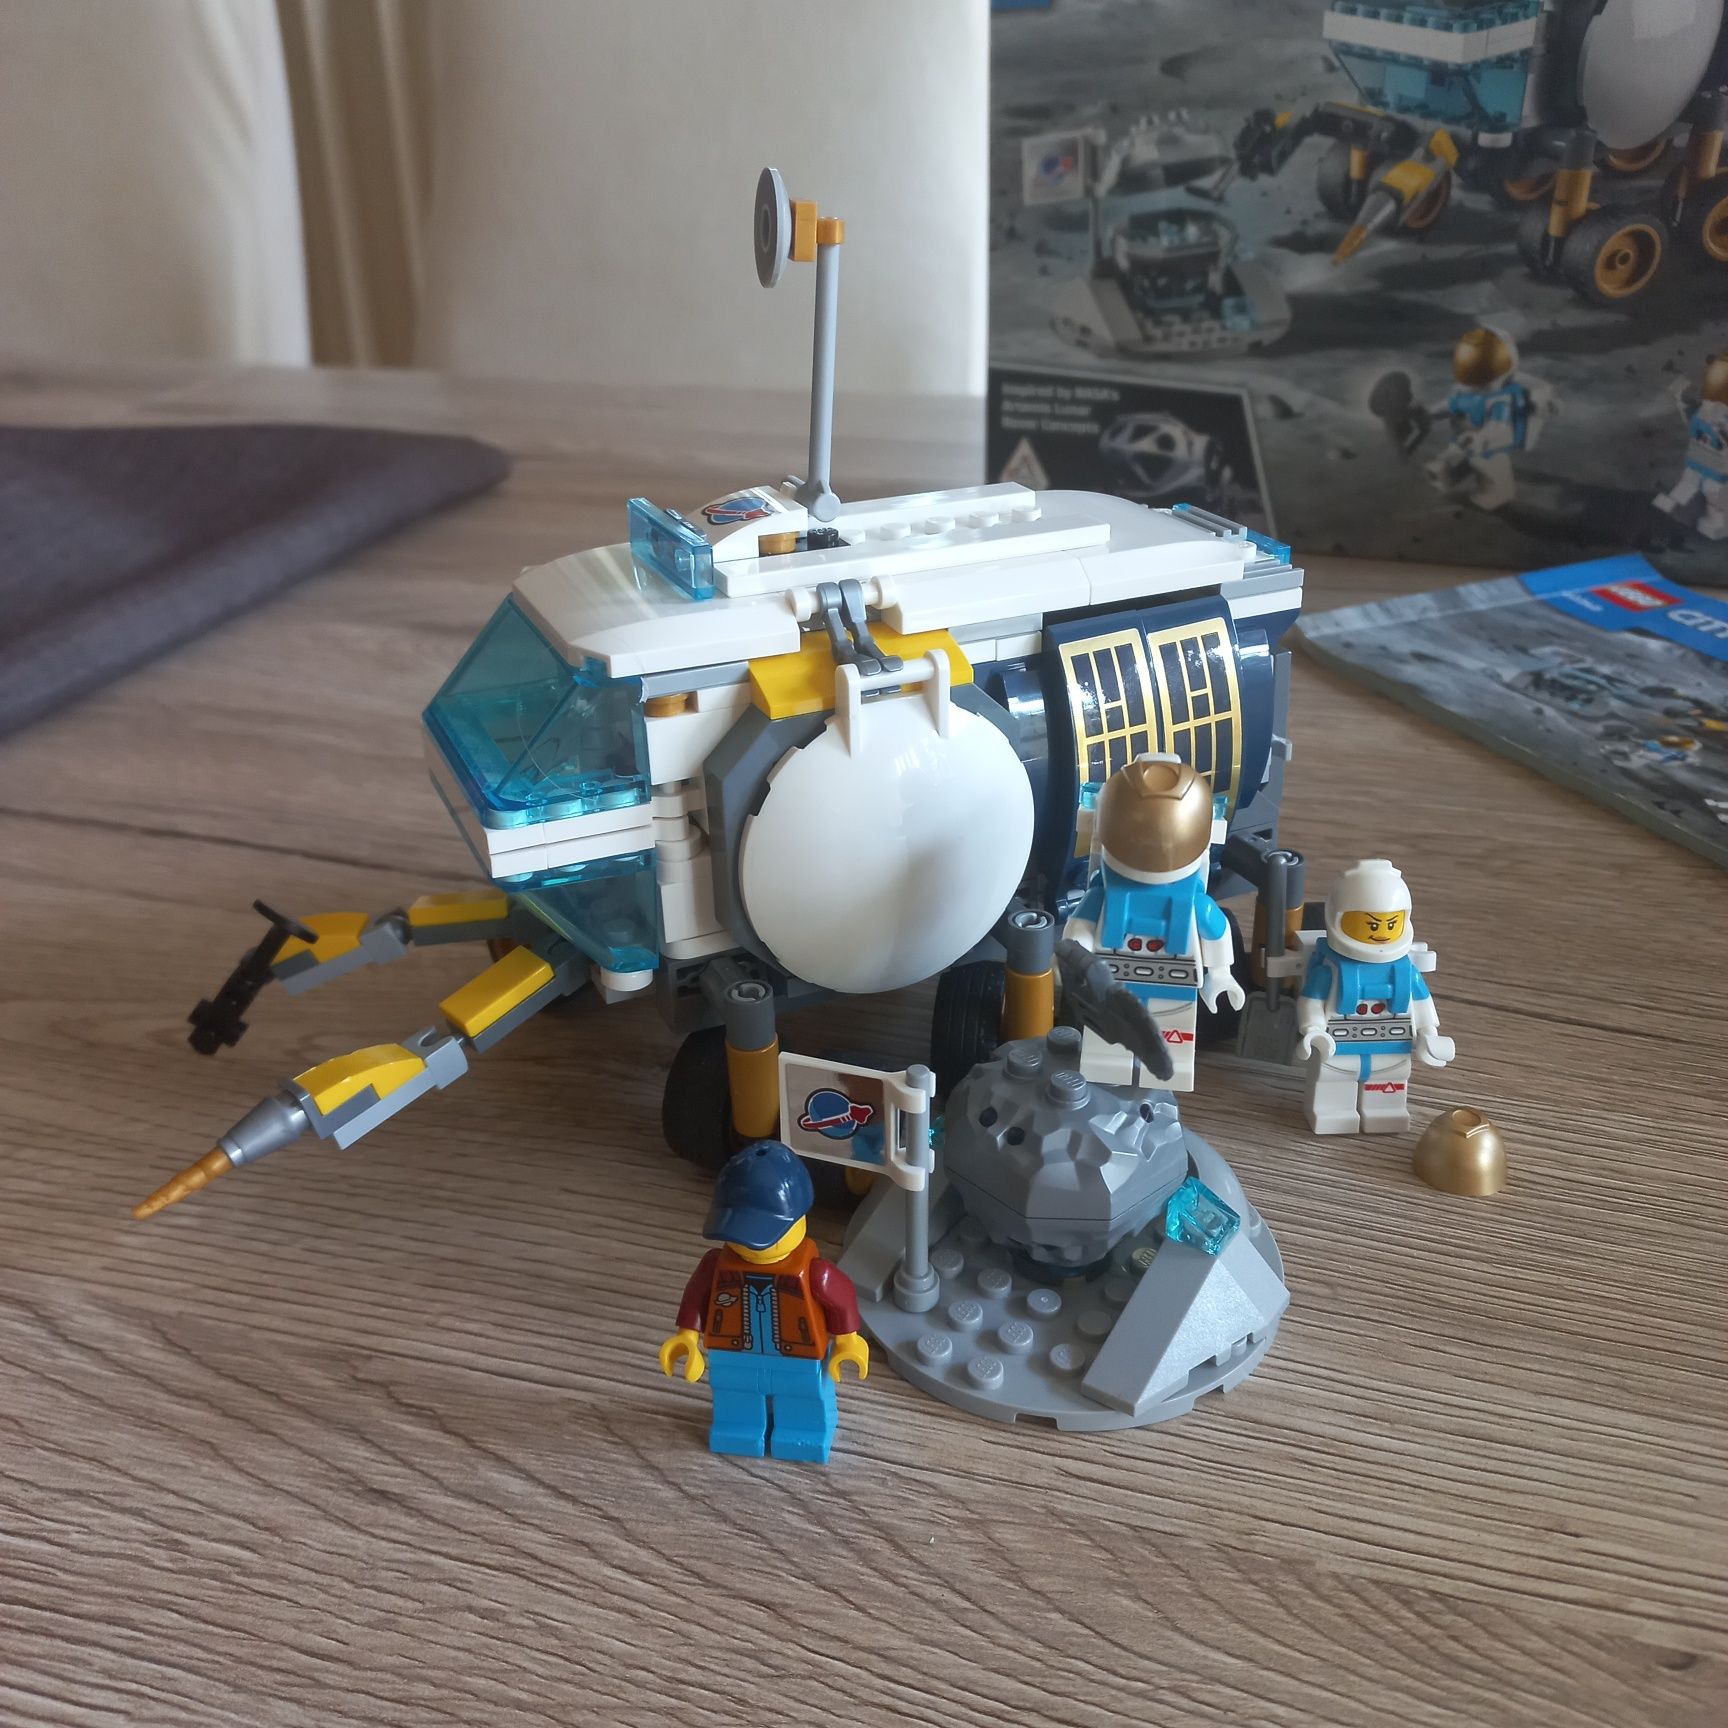 Lego city 60348 Łazik kosmiczny